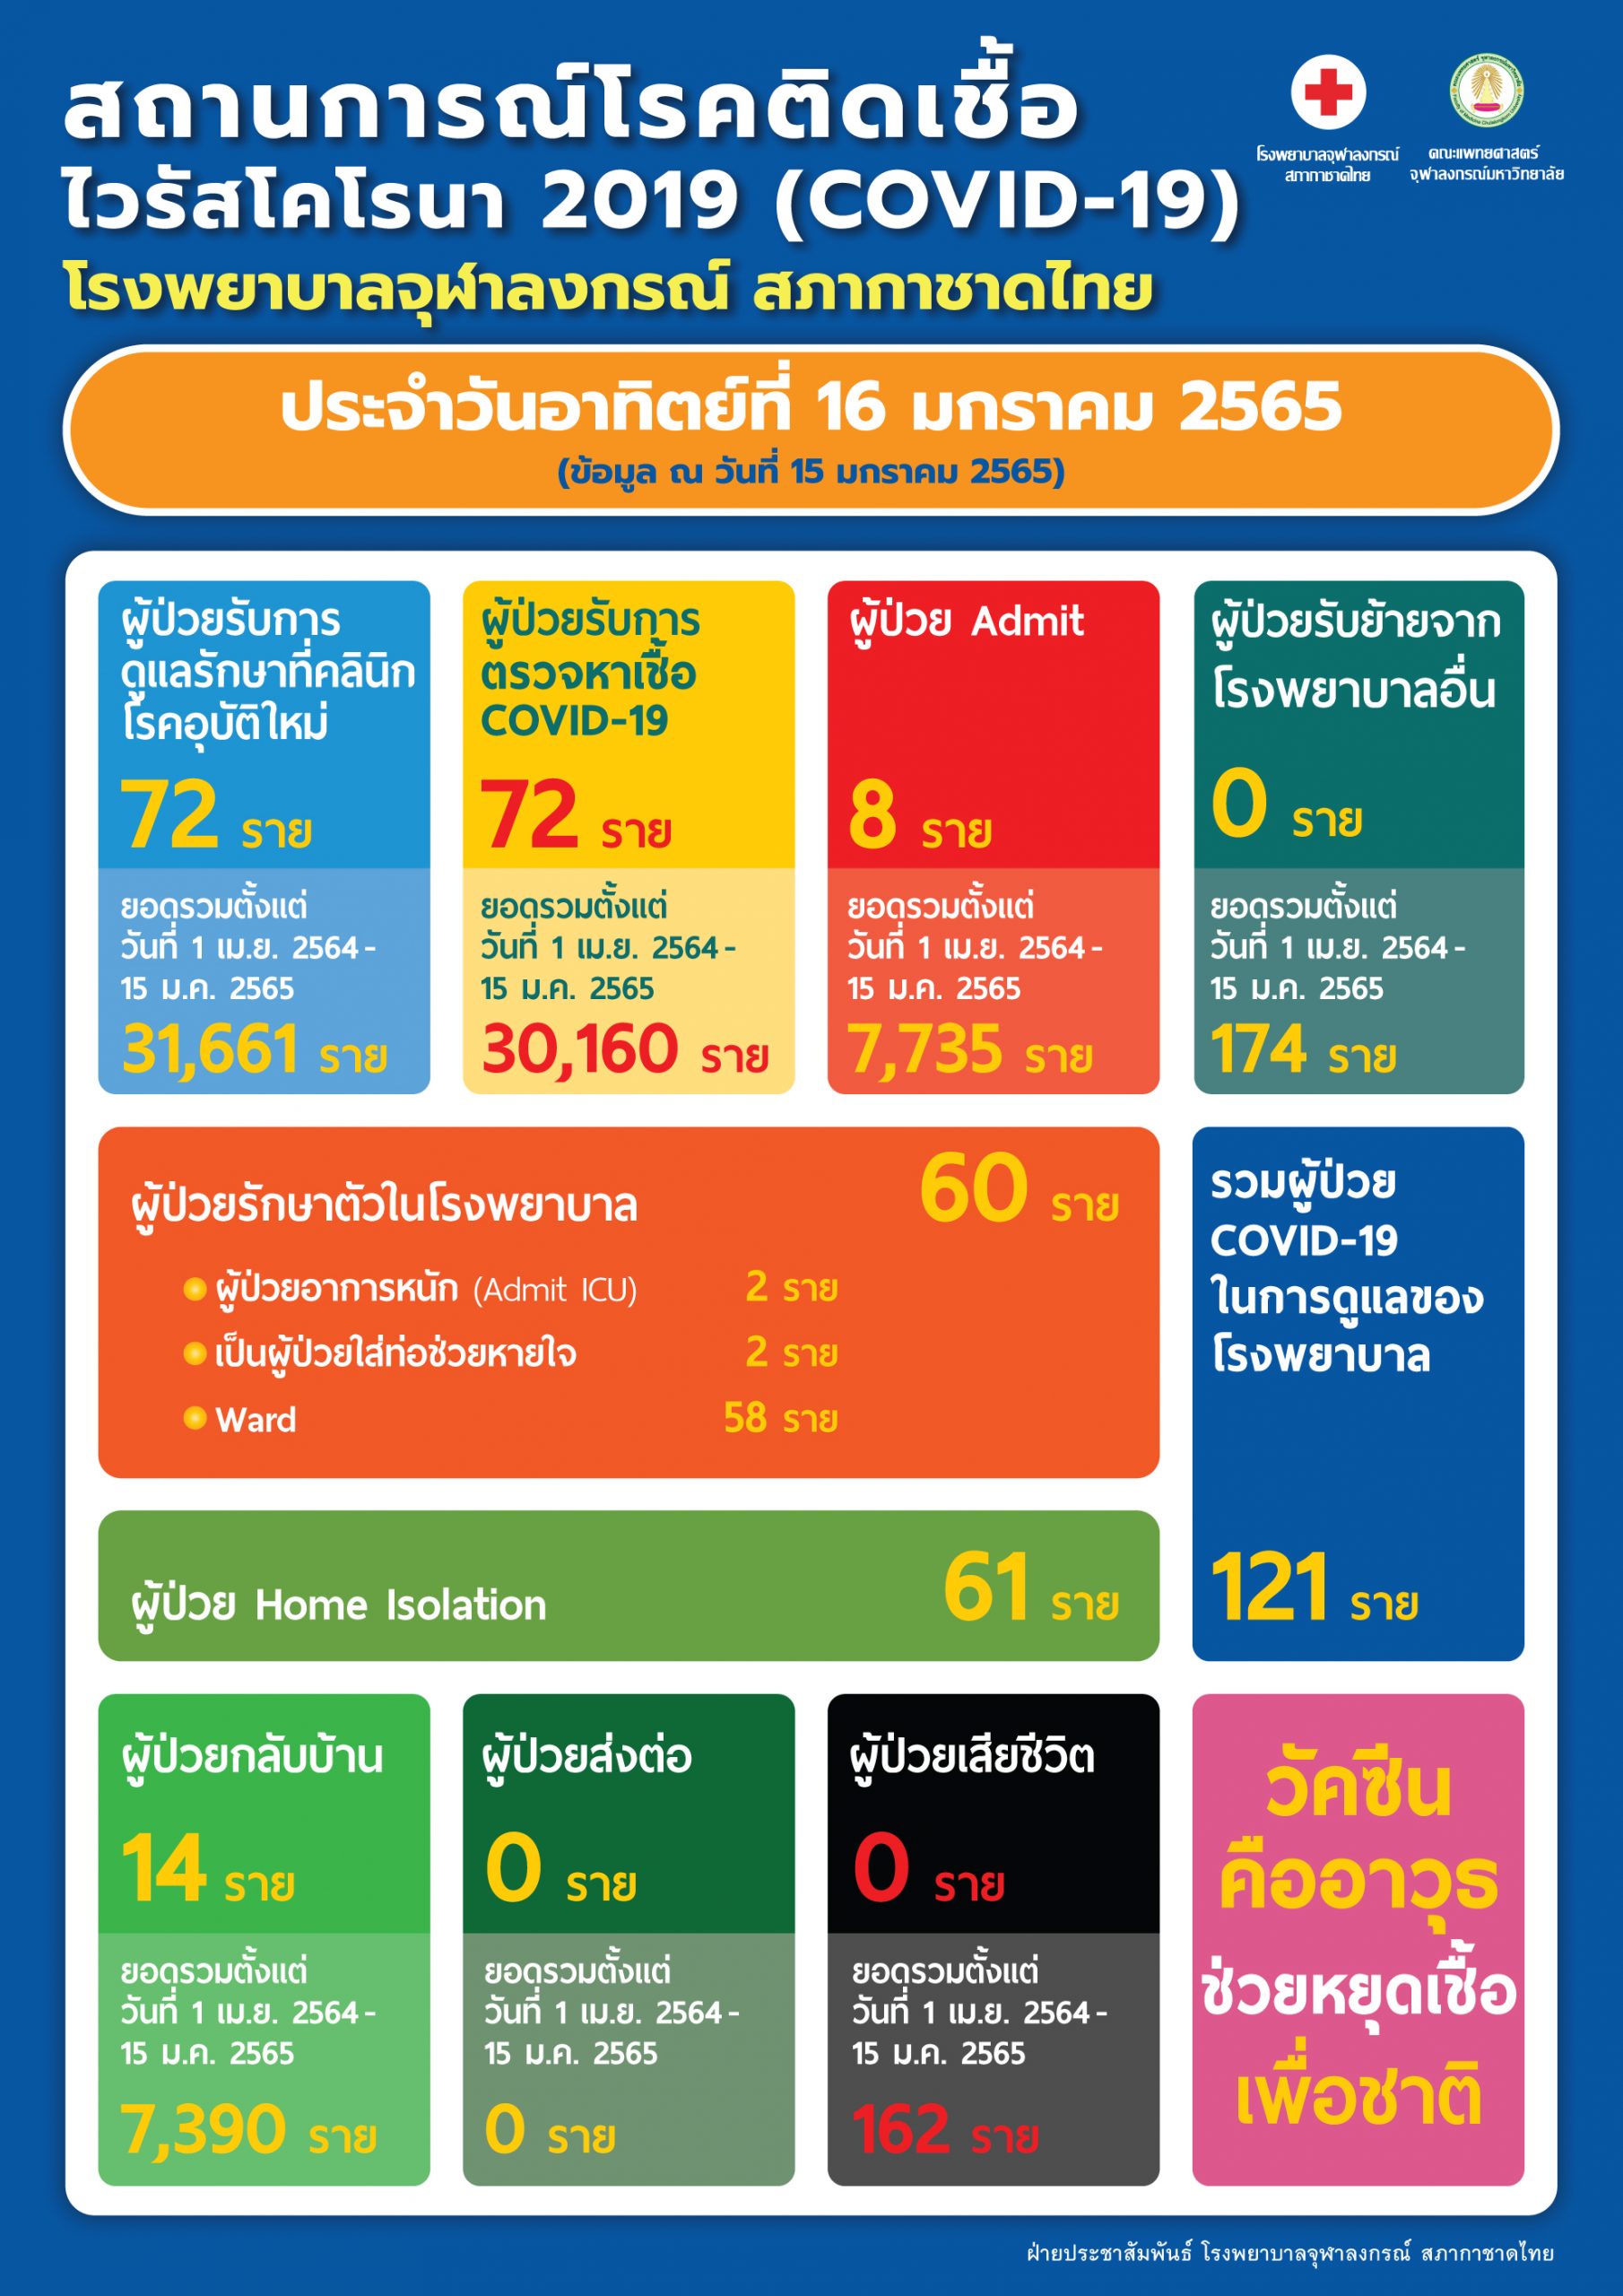 สถานการณ์โรคติดเชื้อไวรัสโคโรนา 2019 (COVID-19) โรงพยาบาลจุฬาลงกรณ์ สภากาชาดไทย ประจำวันอาทิตย์ที่ 16 มกราคม 2565